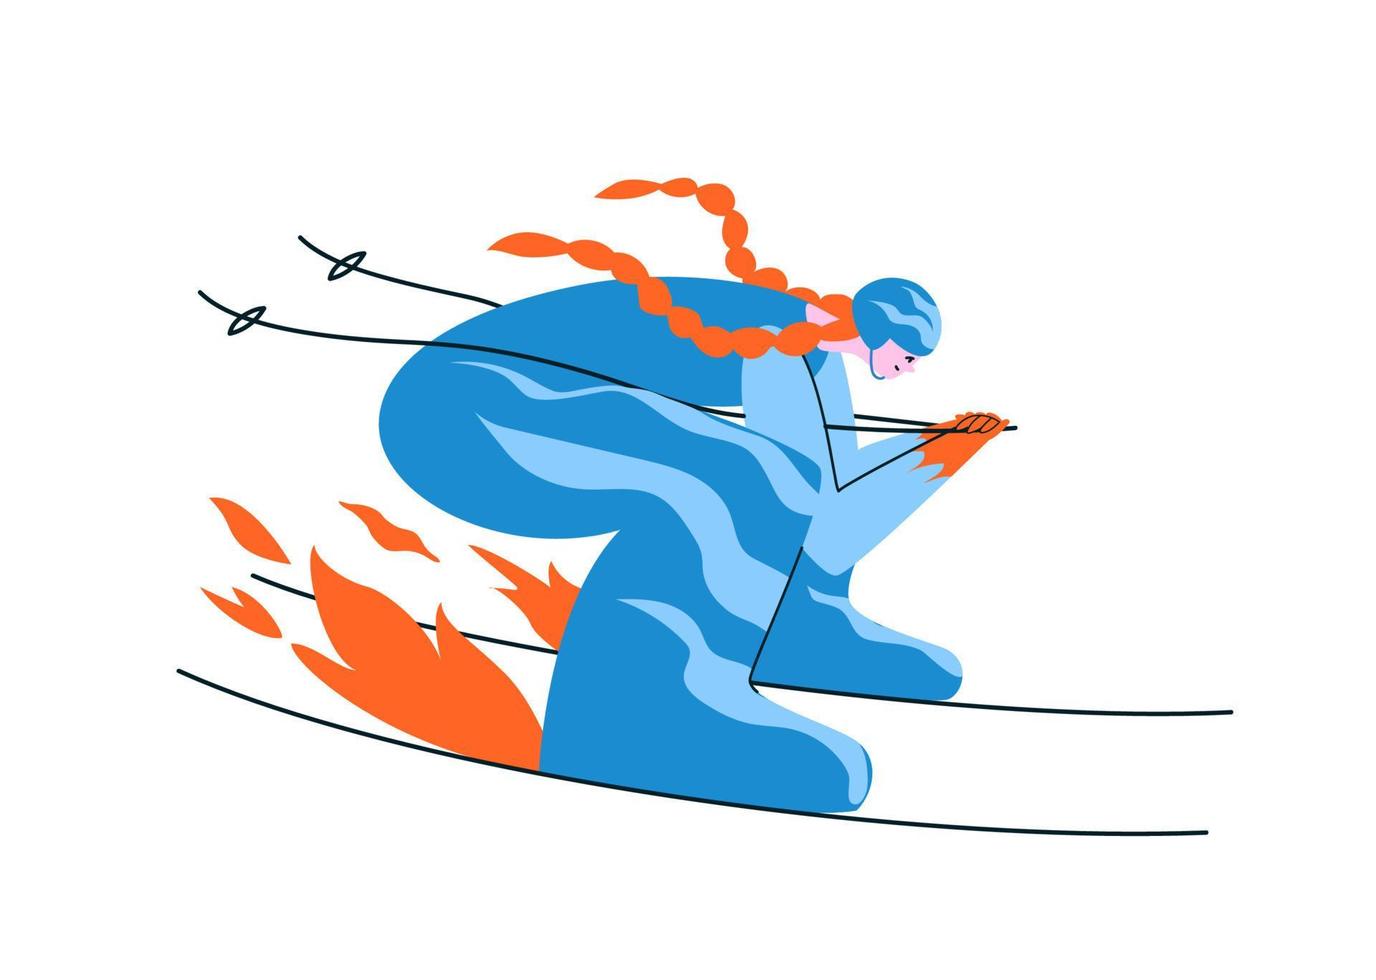 handgezeichnete rothaarige skifahrerin in einem blauen anzug. Eine junge Frau fährt in aerodynamischer Pose mit voller Geschwindigkeit Ski, dass das Feuer unter den Skiern aufleuchtet. Vektor Stock Illustration im Cartoon-Stil auf weiß.